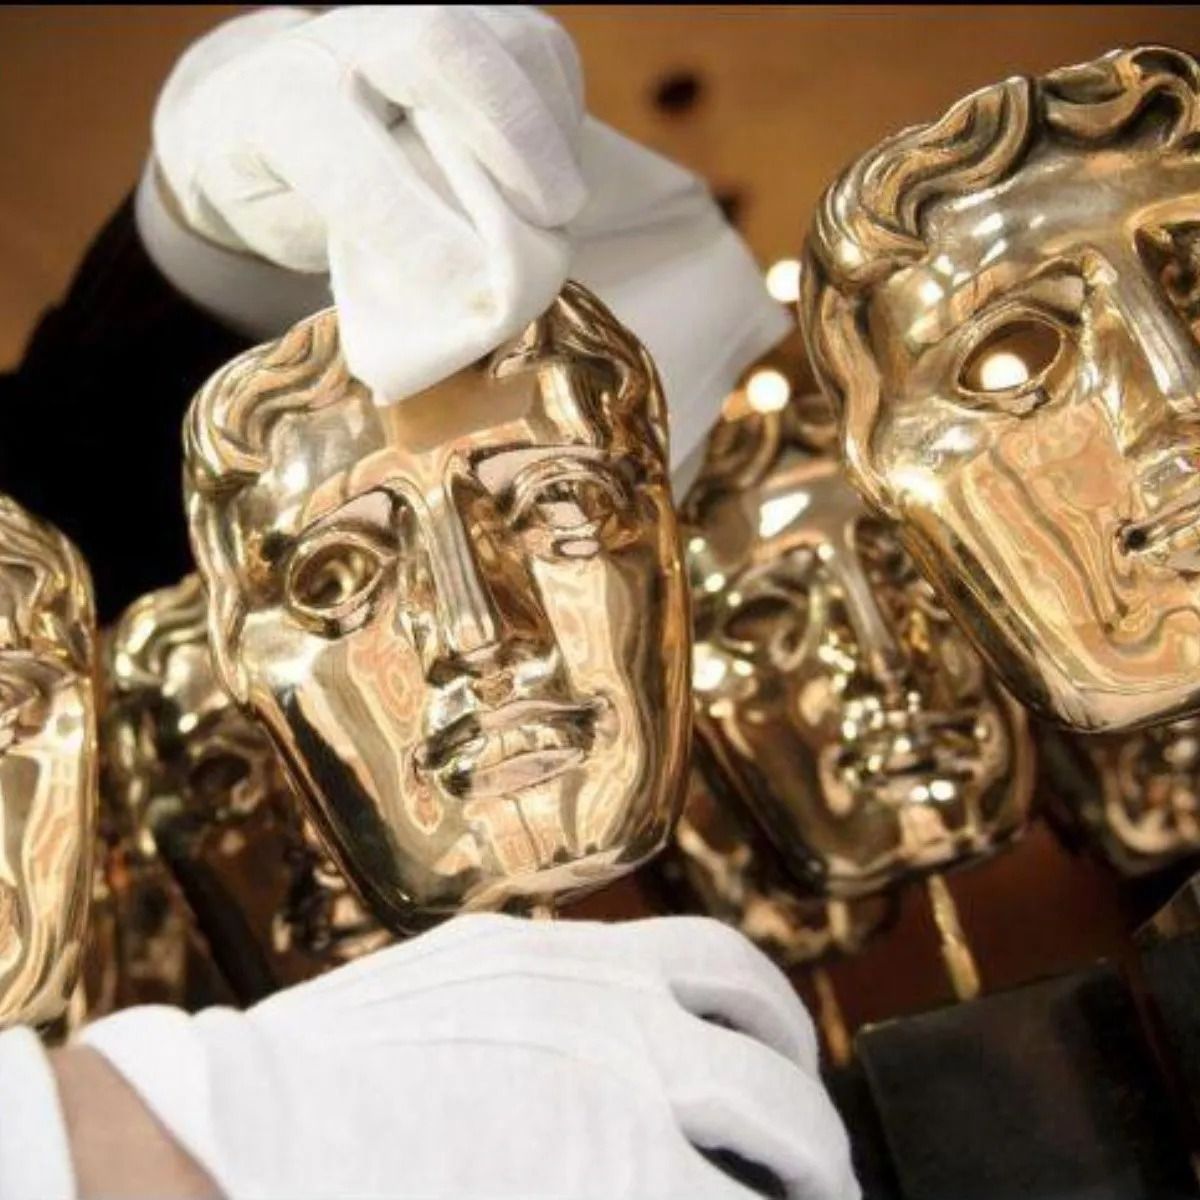 Los premios BAFTA anuncian a sus nominados (y la lista ahora es mucho más diversa)